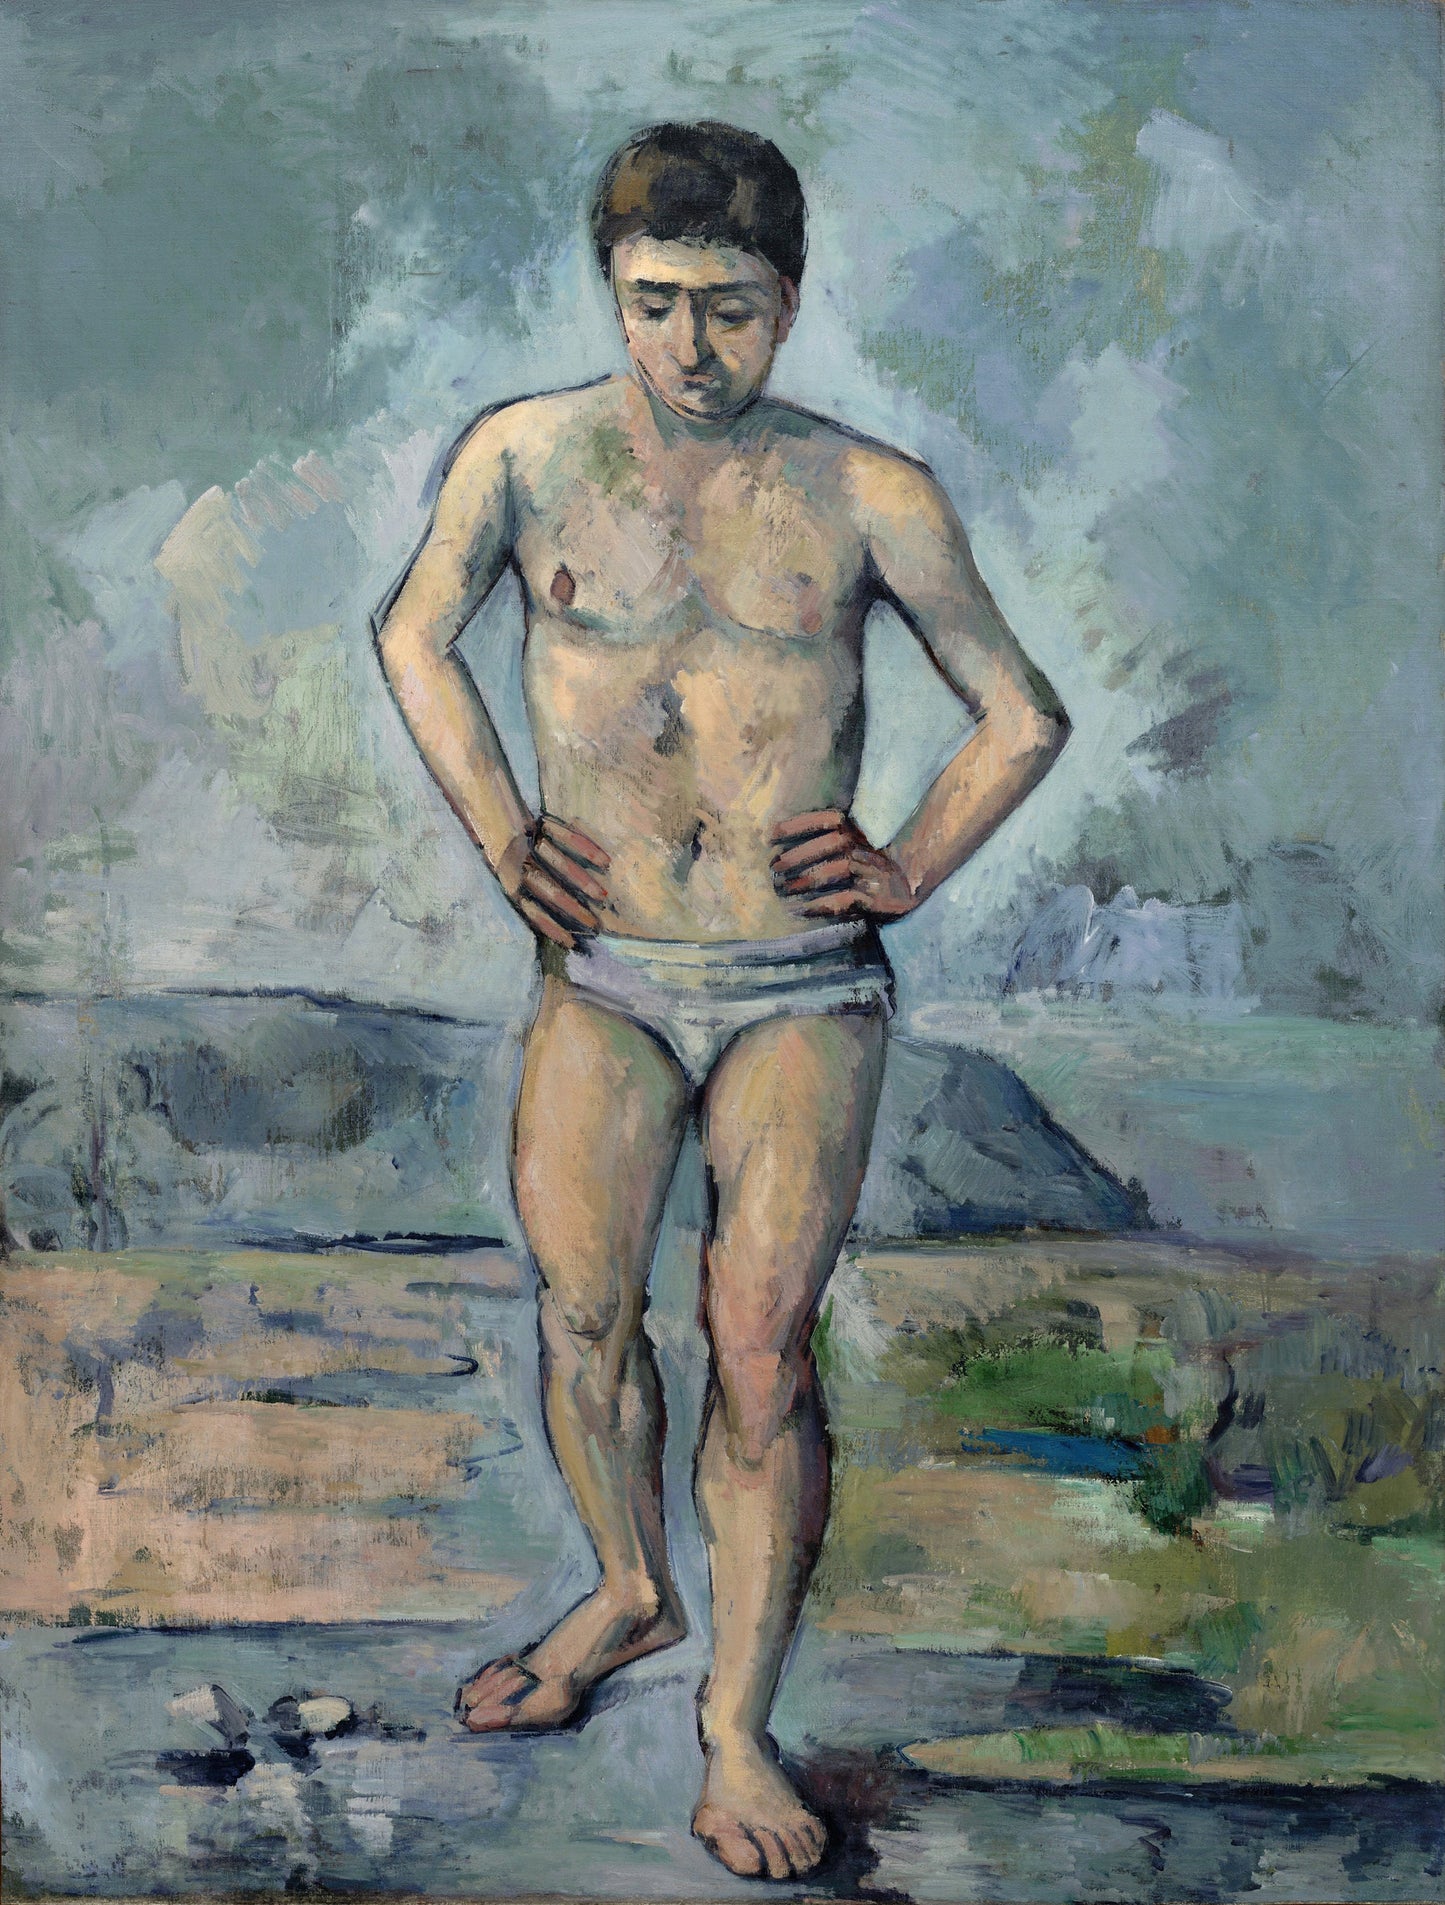 Paul Cezanne Post Impressionist Portrait Paintings Set 1 [26 Images]